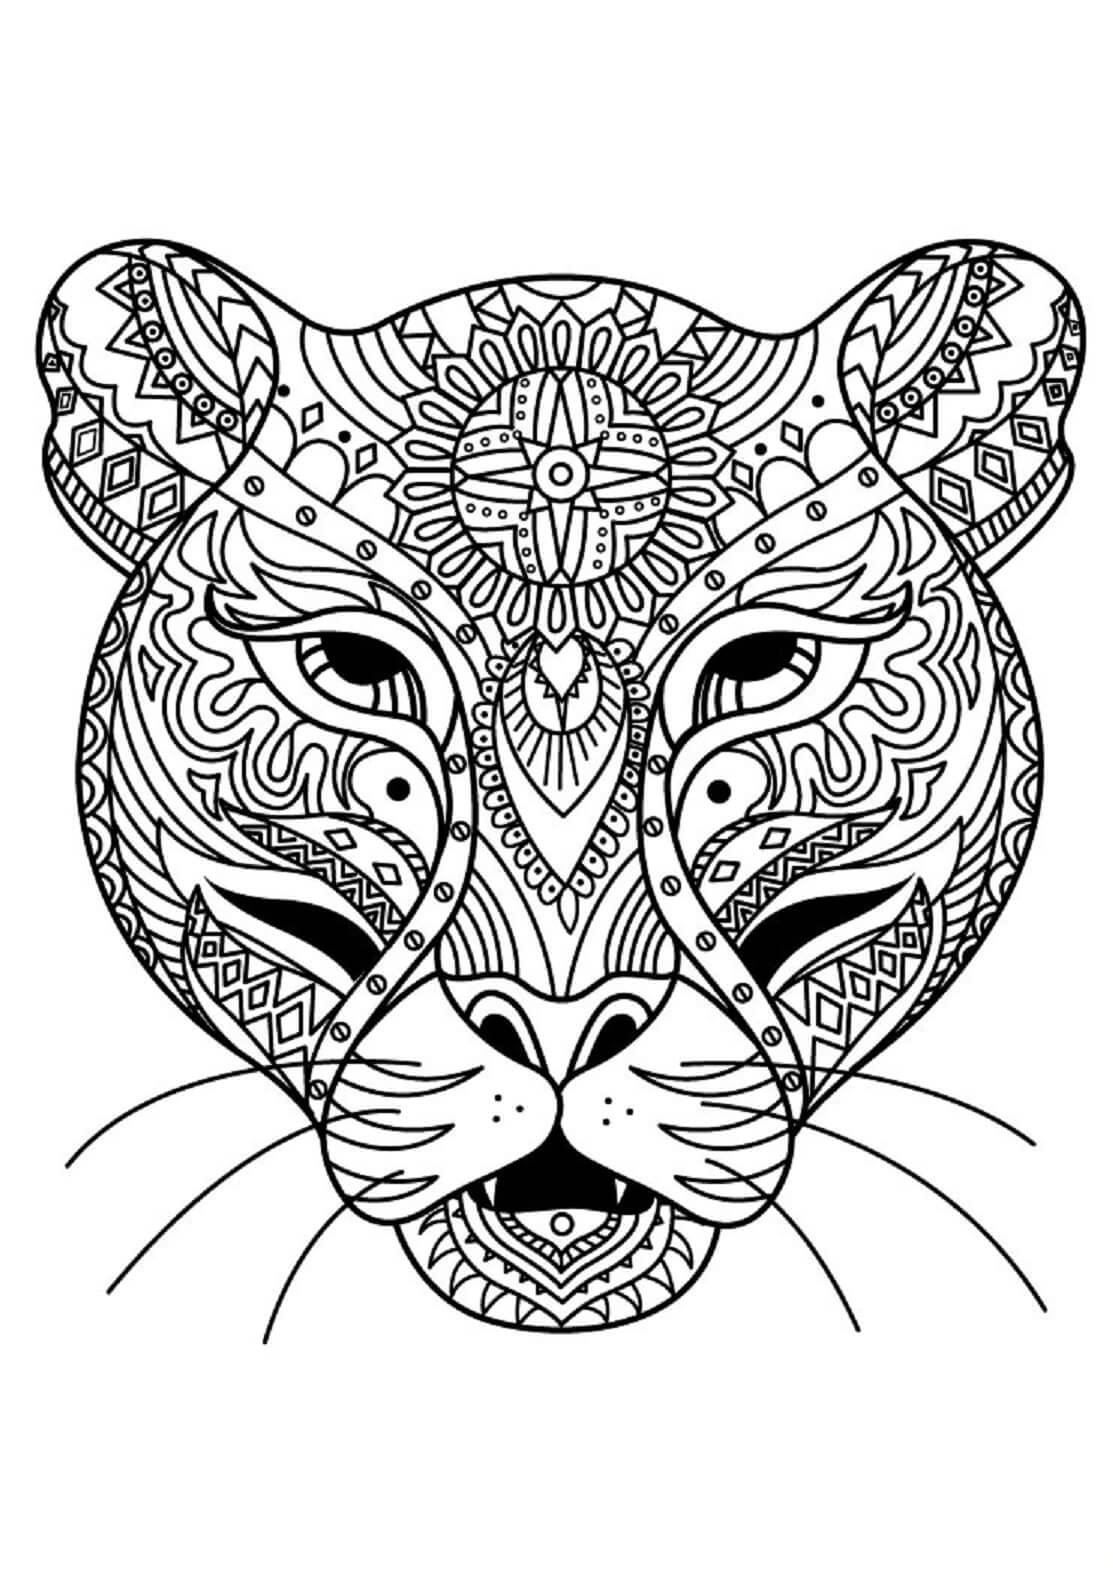 Mandala Tiger Coloring Page - Sheet 5 Mandalas